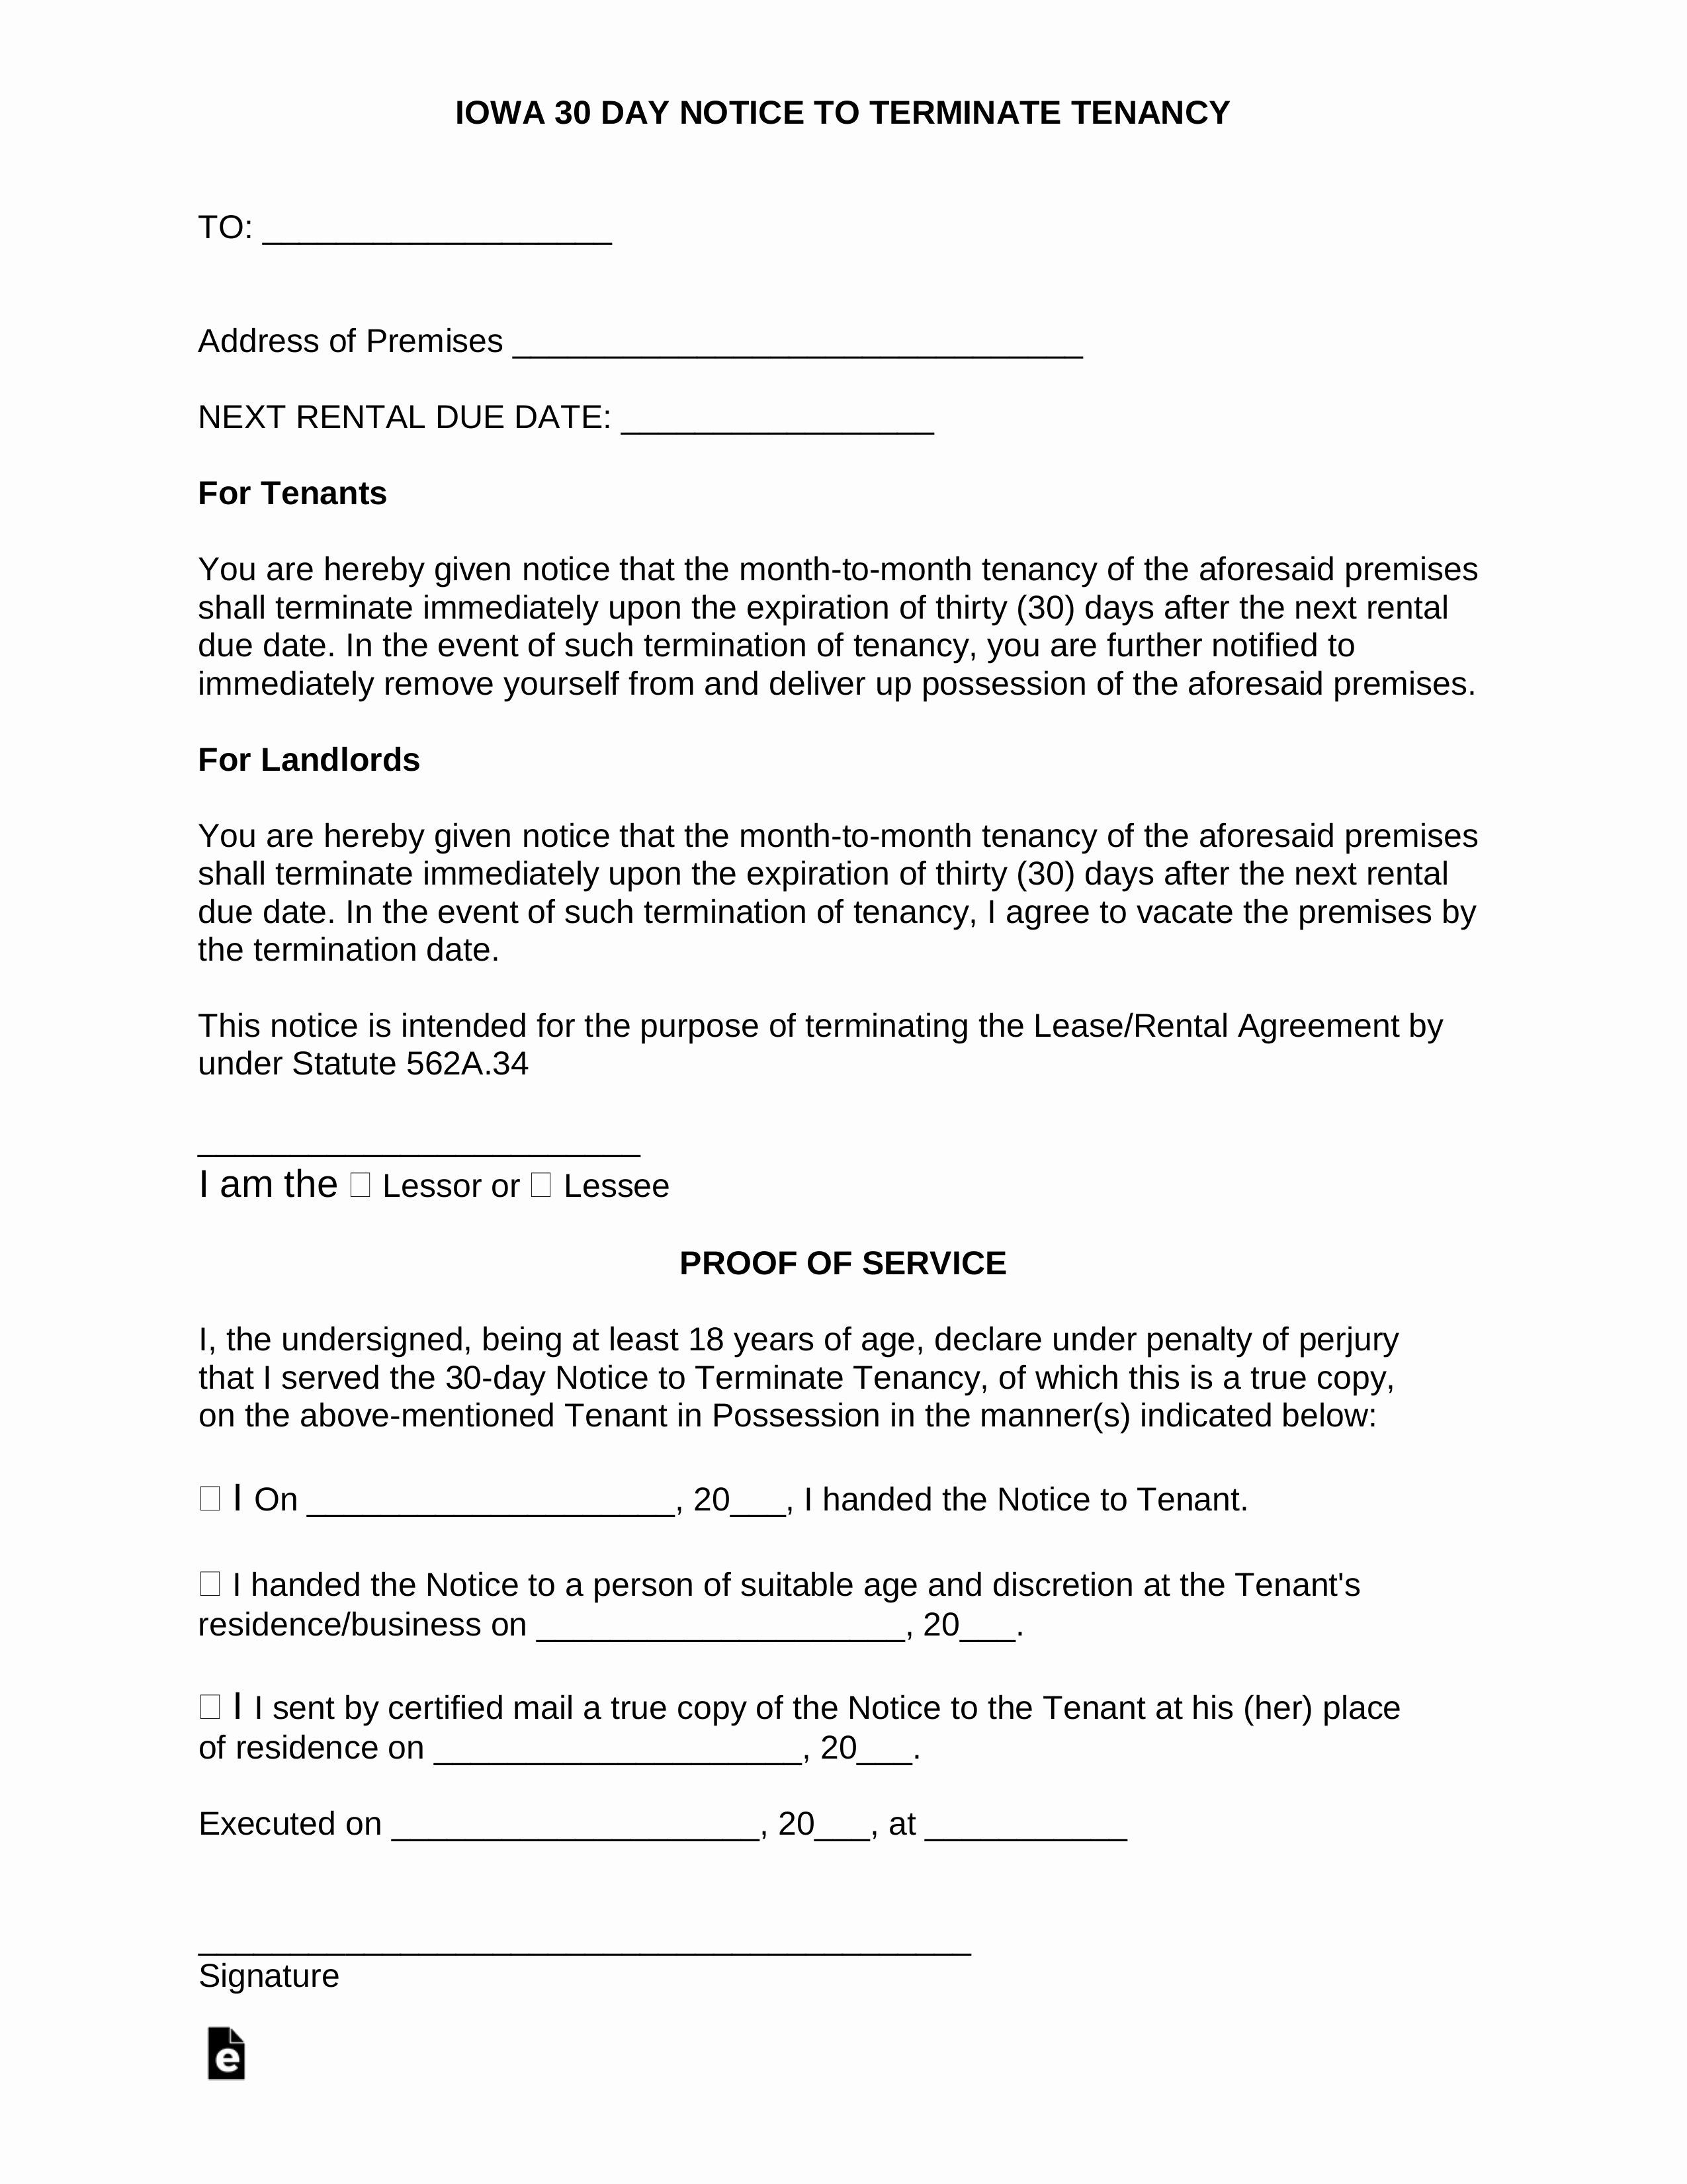 Letter to Cancel Lease Unique Iowa Lease Termination Letter form